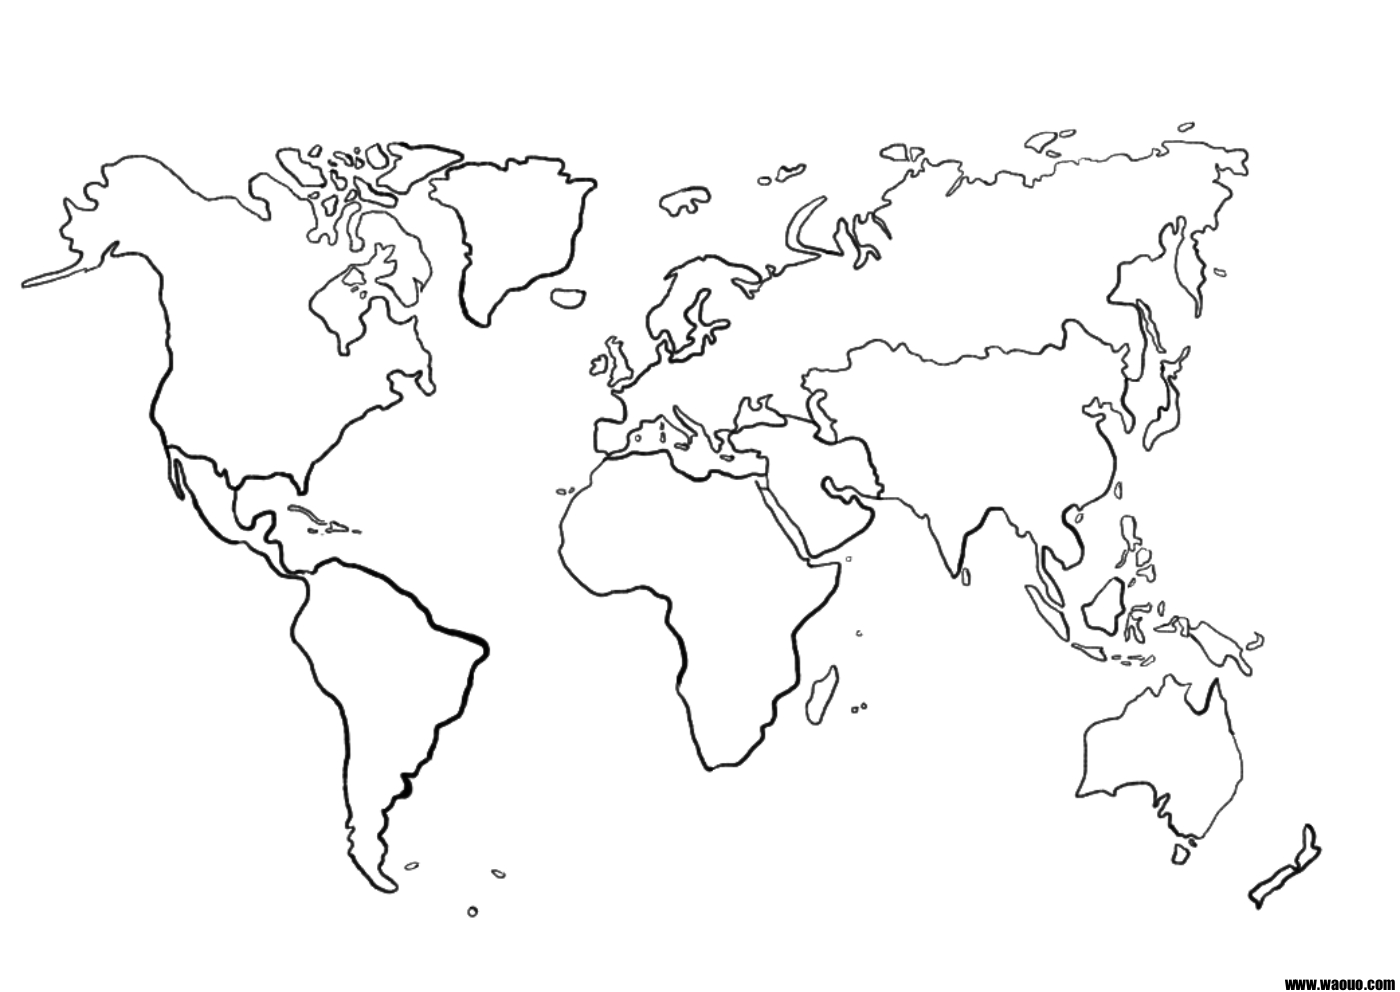 Une carte du monde mappemonde vierge pour la géographie à imprimer